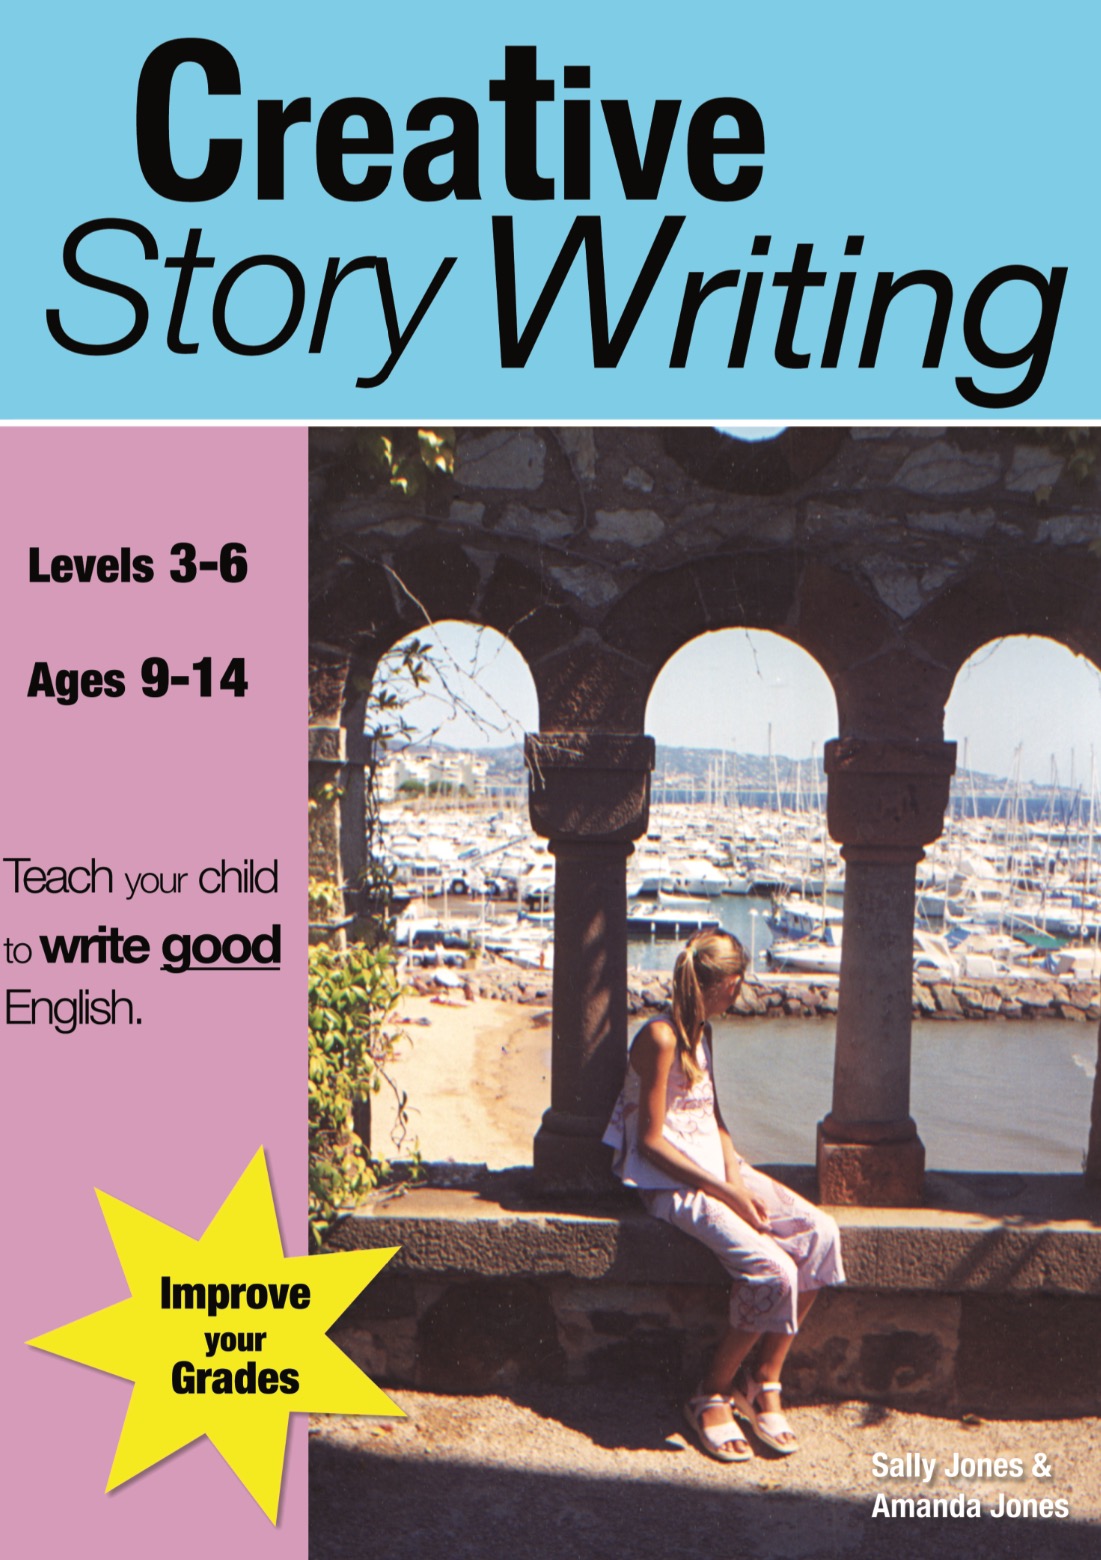 Creative Story Writing (9-14 years)